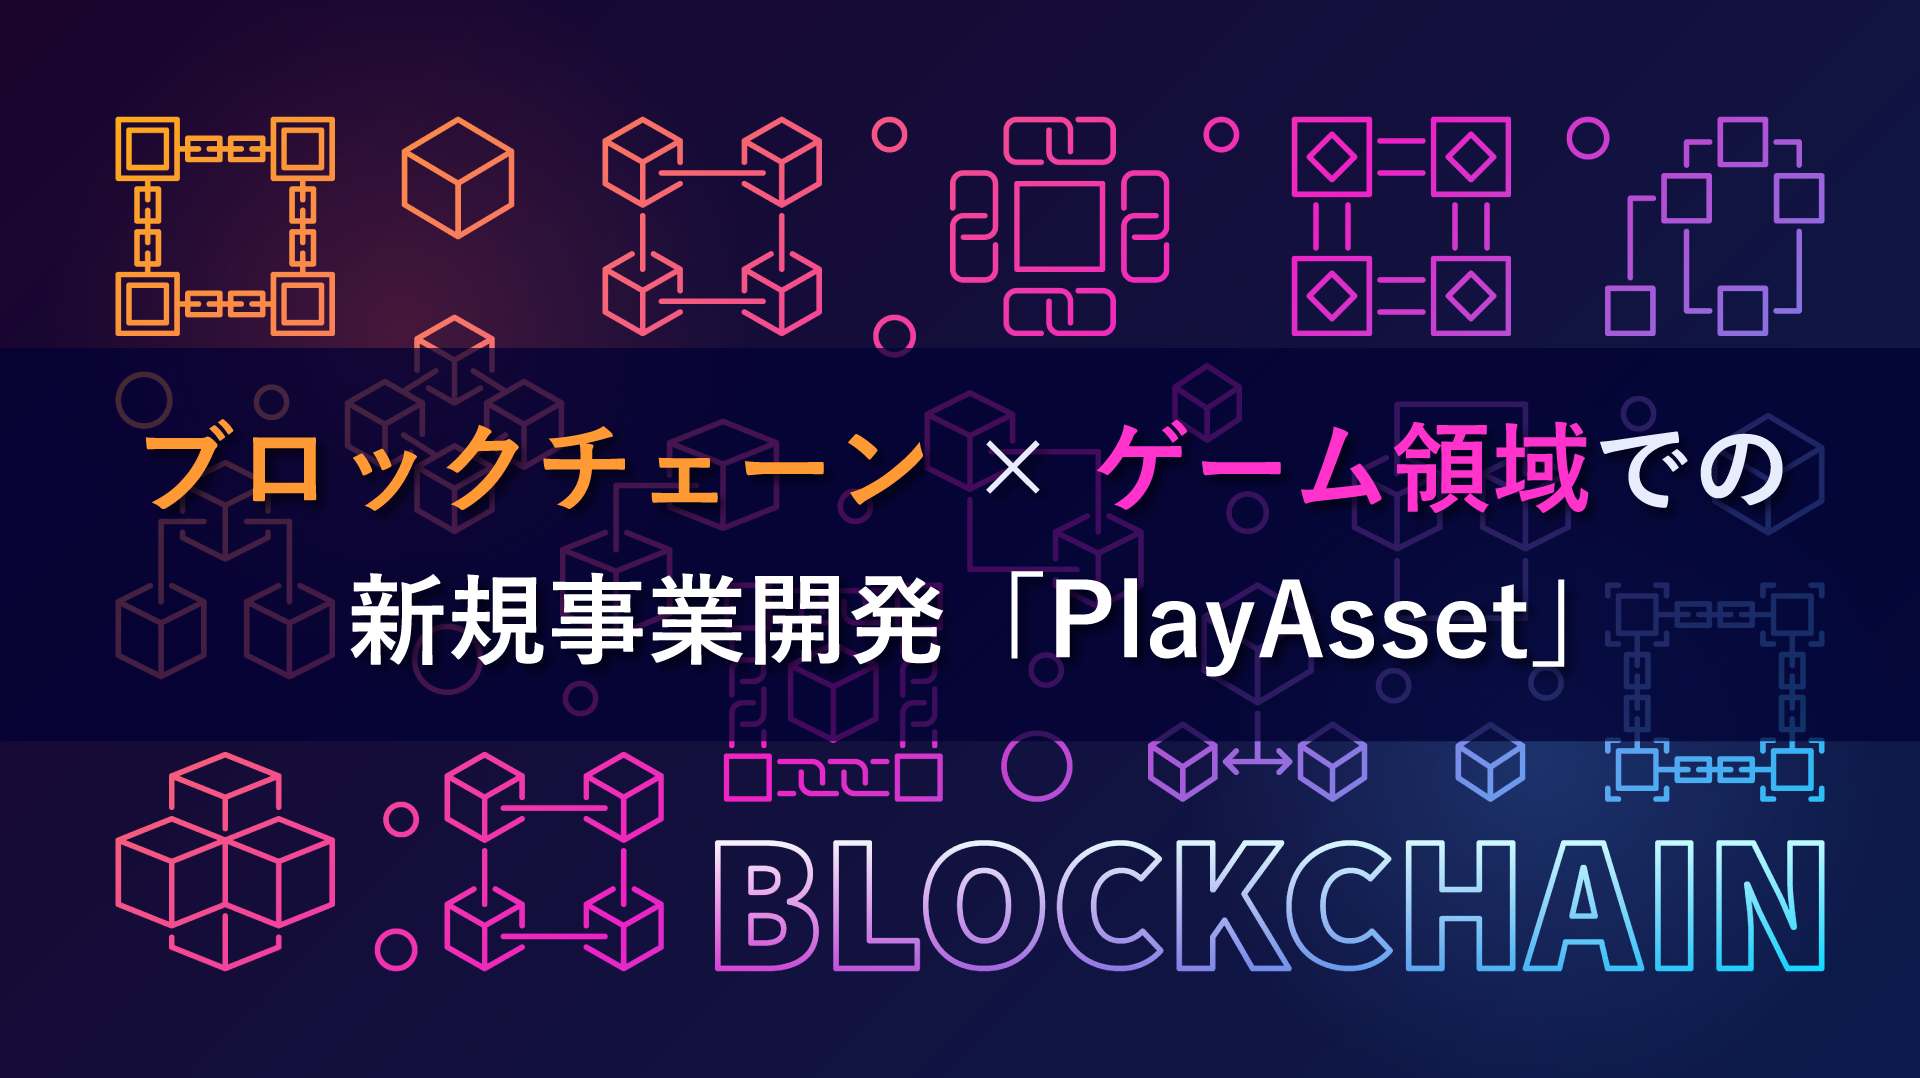 ブロックチェーン ゲーム領域での新規事業開発 Playasset 入門から応用までよく分かるブロックチェーン 生活者データ ドリブン マーケティング通信